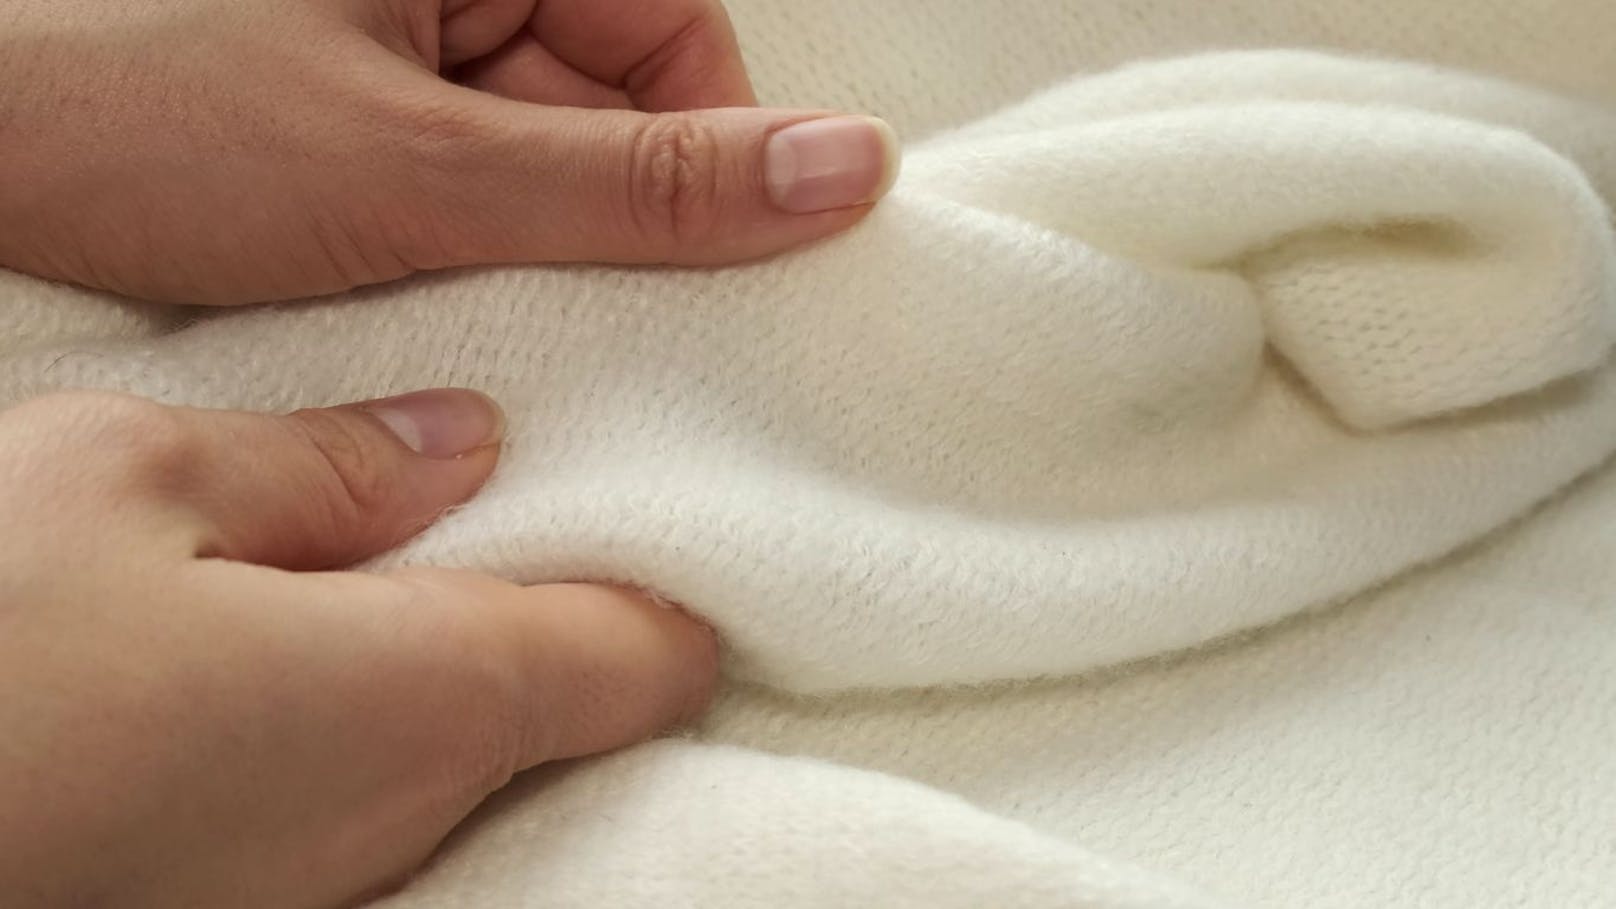 Ein qualitativer Pullover der dich warm hält sollte, wenn möglich aus Baumwolle sein. Um die Bildung von Fusseln zu vermeiden solltest du dir einen Pullover anschaffen, der dir keine Probleme bereiten wird: Reibe den Stoff für einige Sekunden mit etwas Druck aneinander und achte darauf, ob kleine Knoten zu sehen sind.    